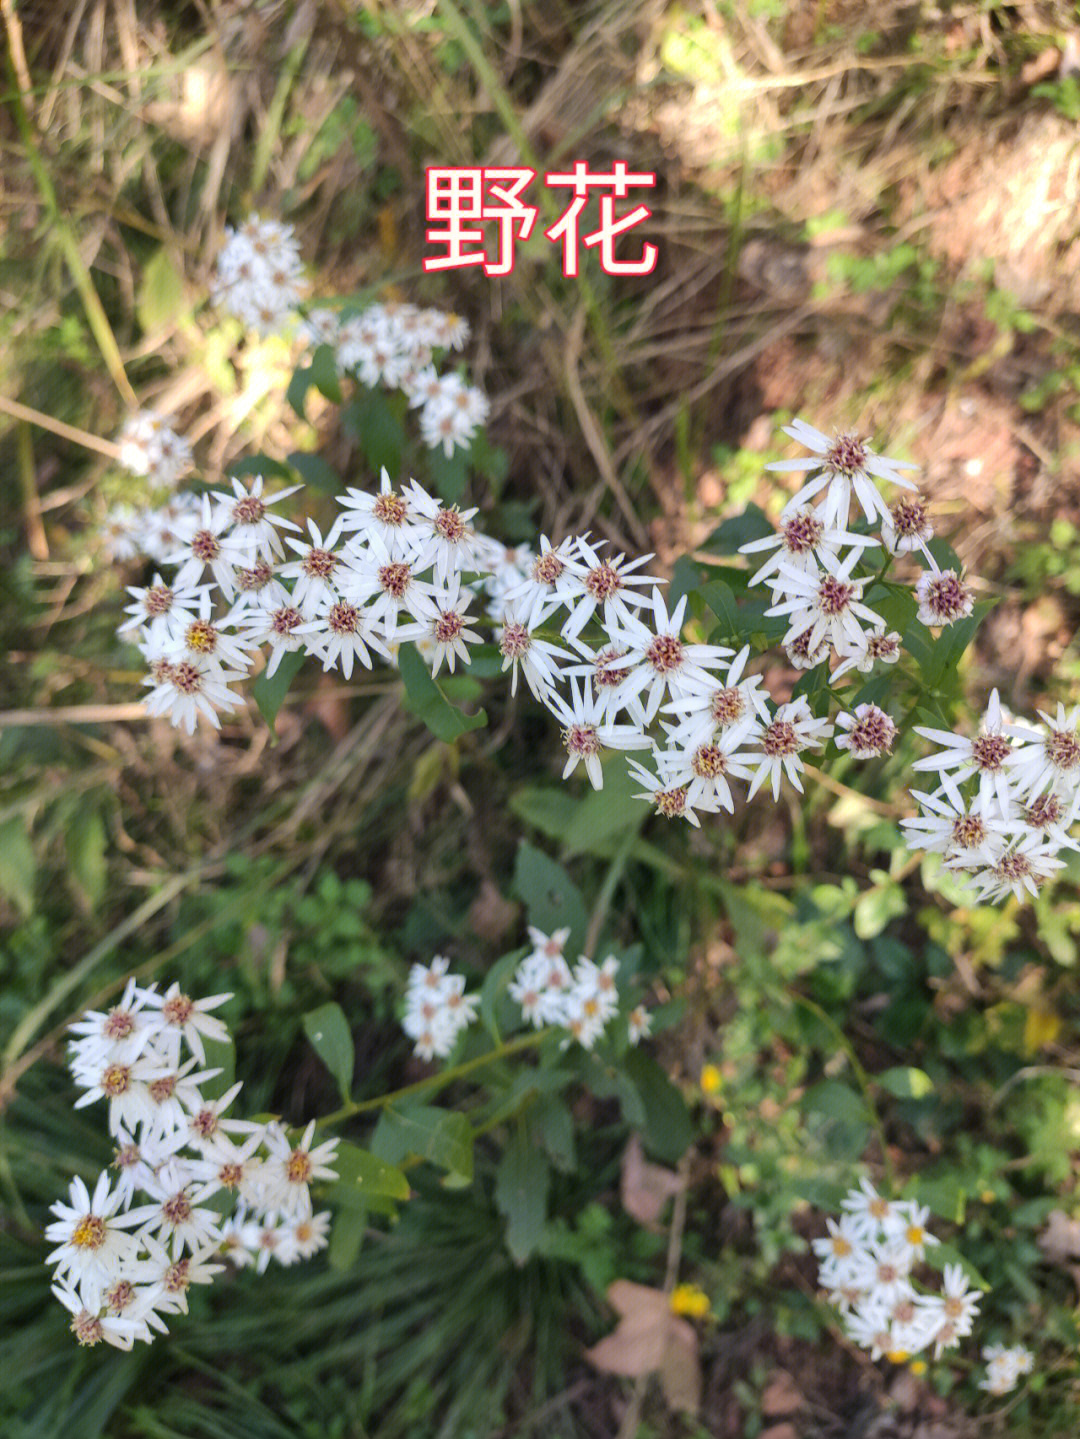 农村的小野花